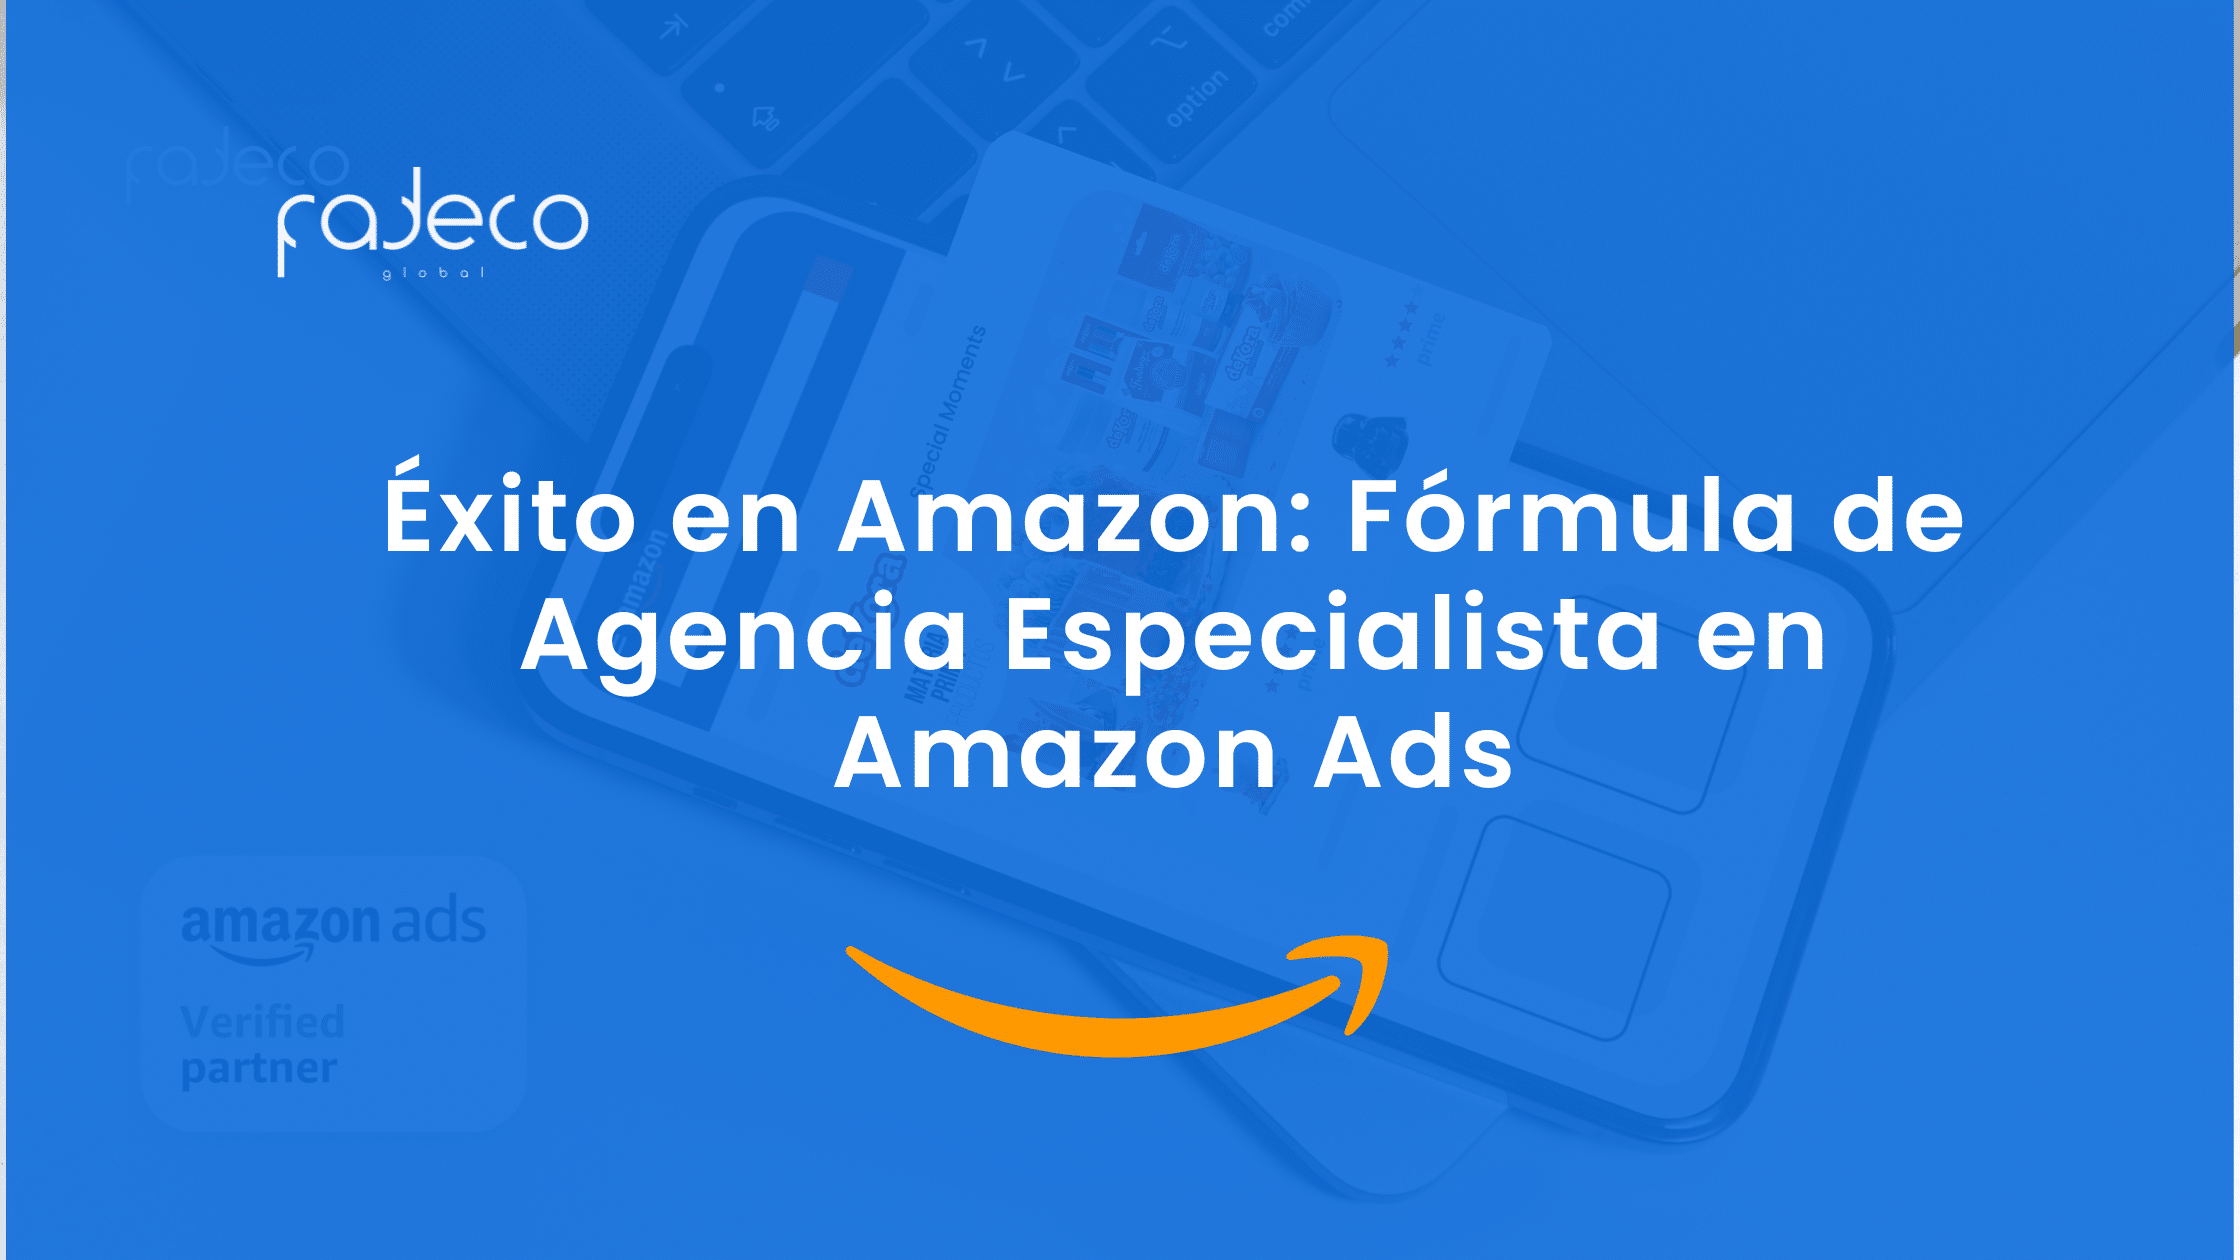 Agencia Especialista en Amazon Ads